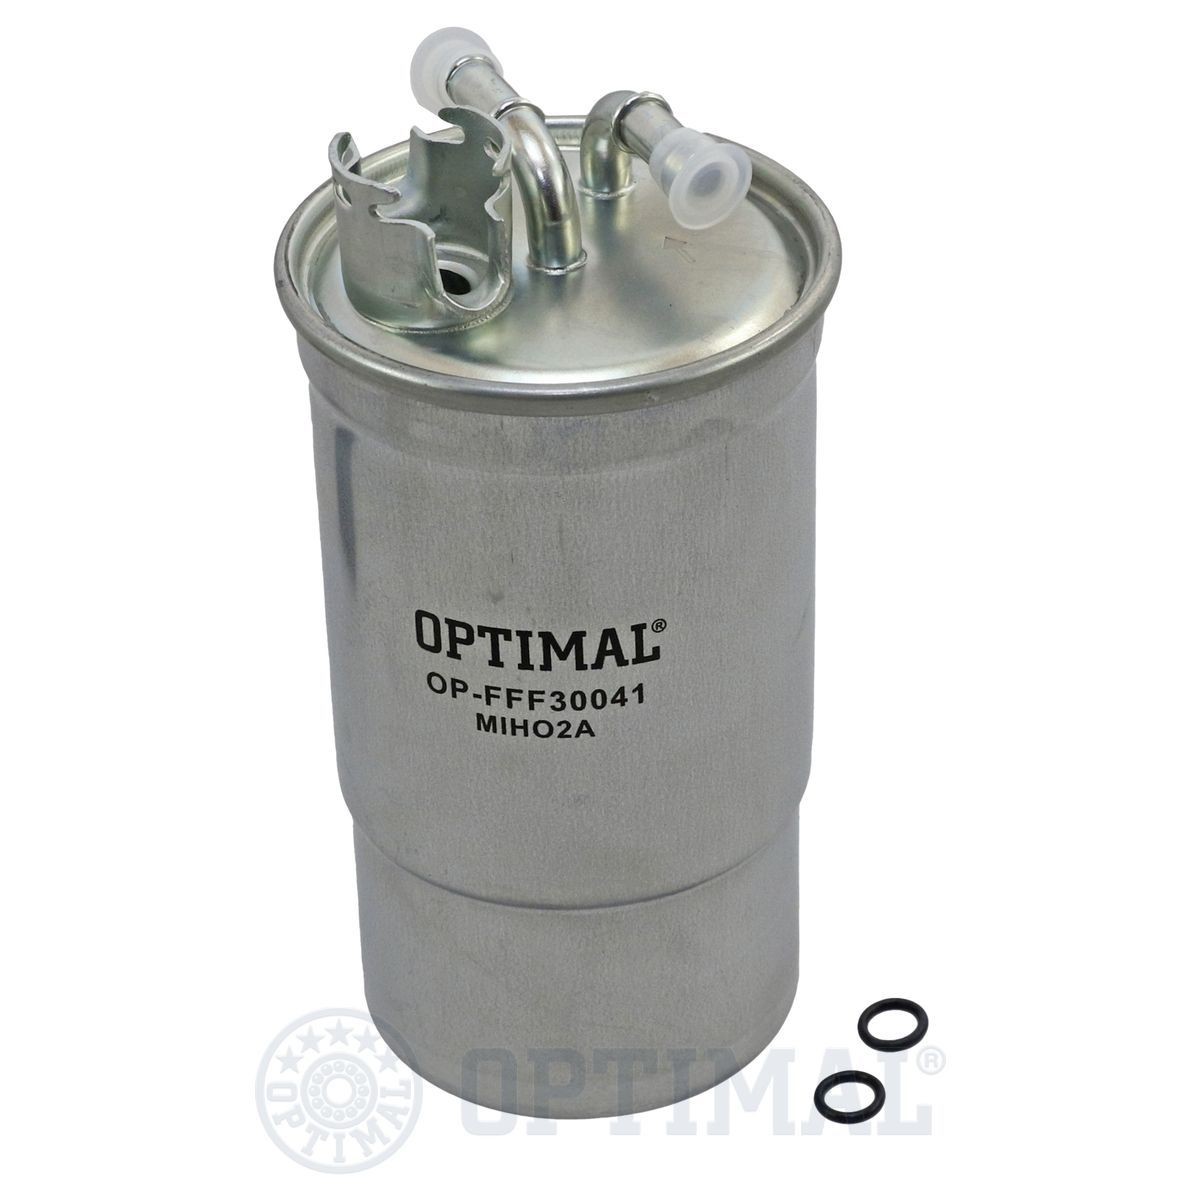 OPTIMAL OP-FFF30041 Fuel filter 1CO 127 401